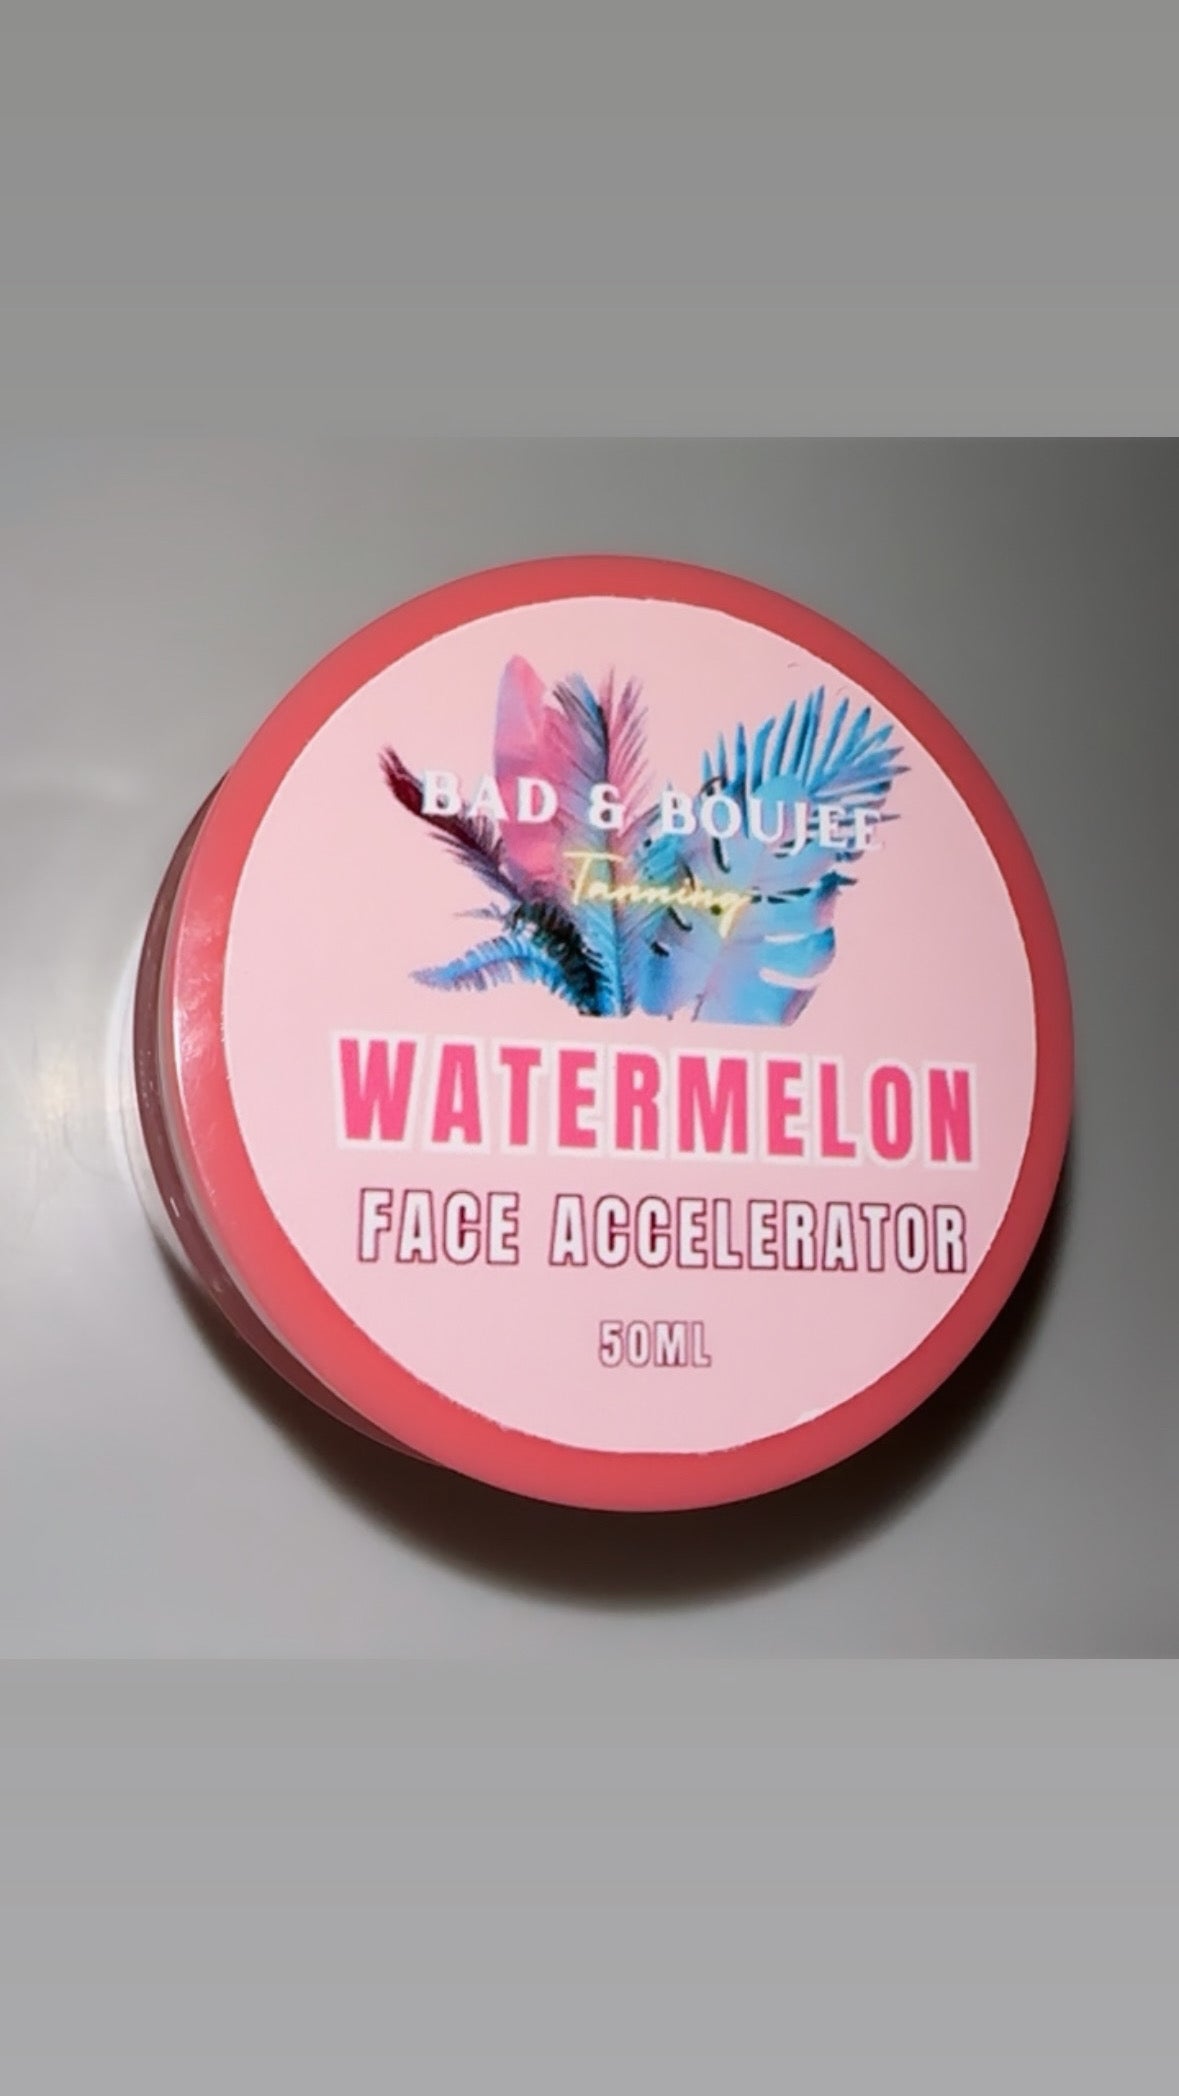 Watermelon Face Accelerator